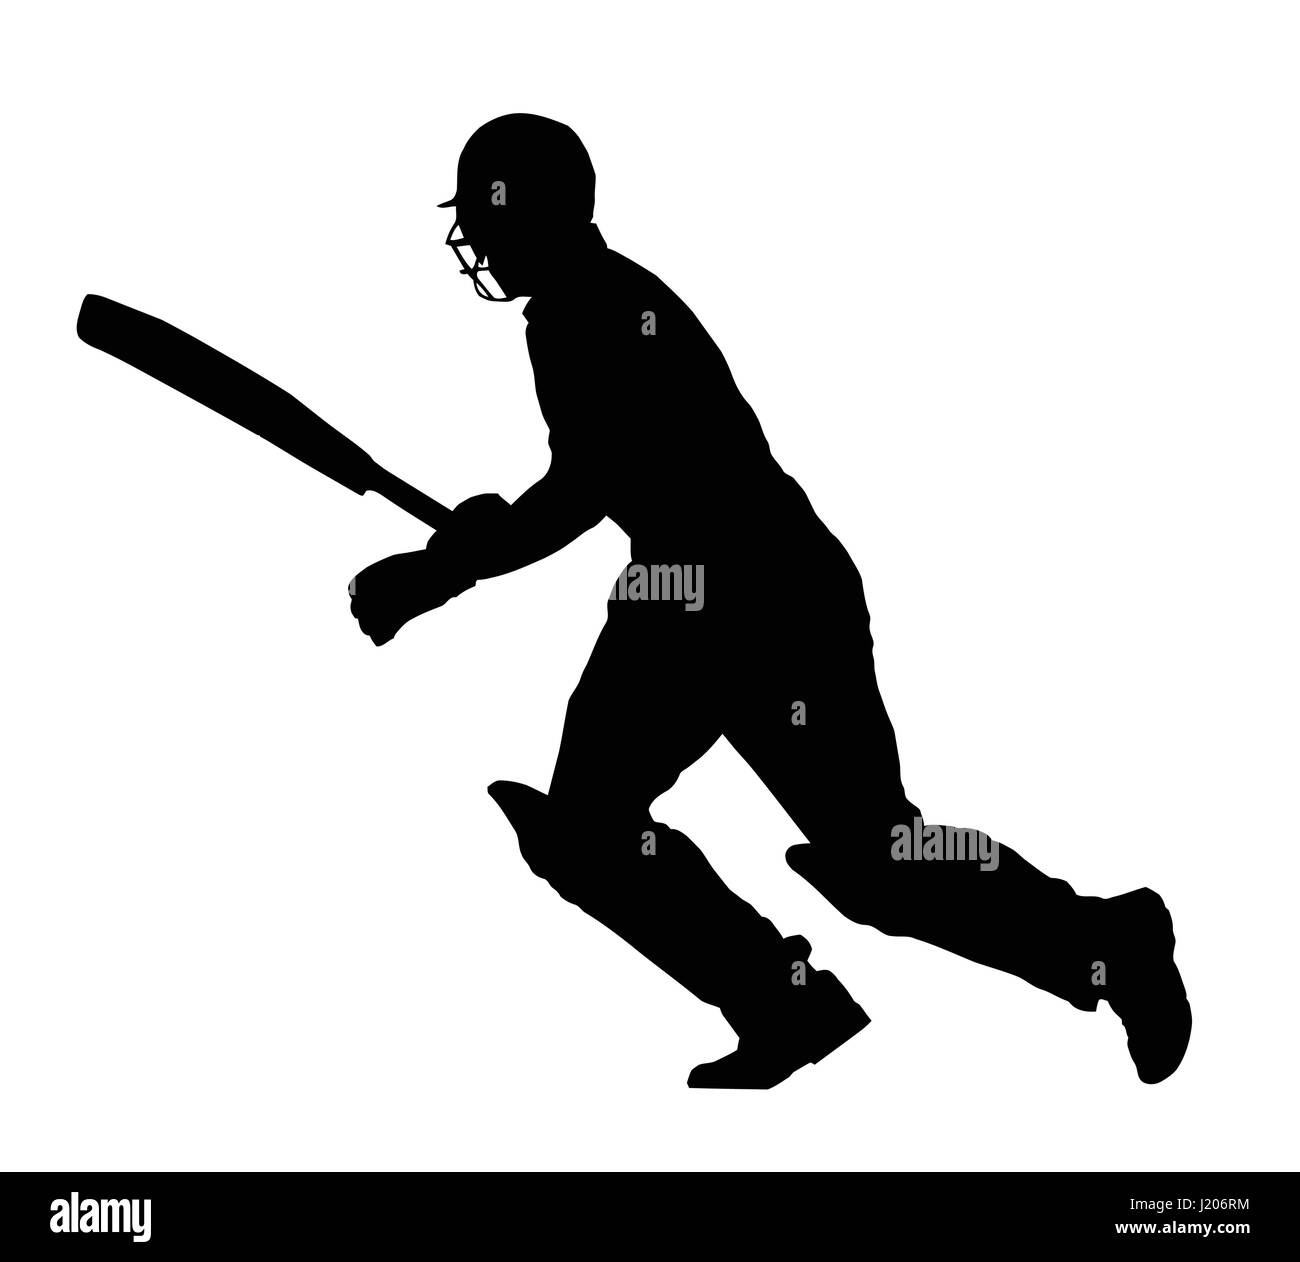 Sport Silhouette - Cricket Batsman Running Between Wickets Stock Vector ...